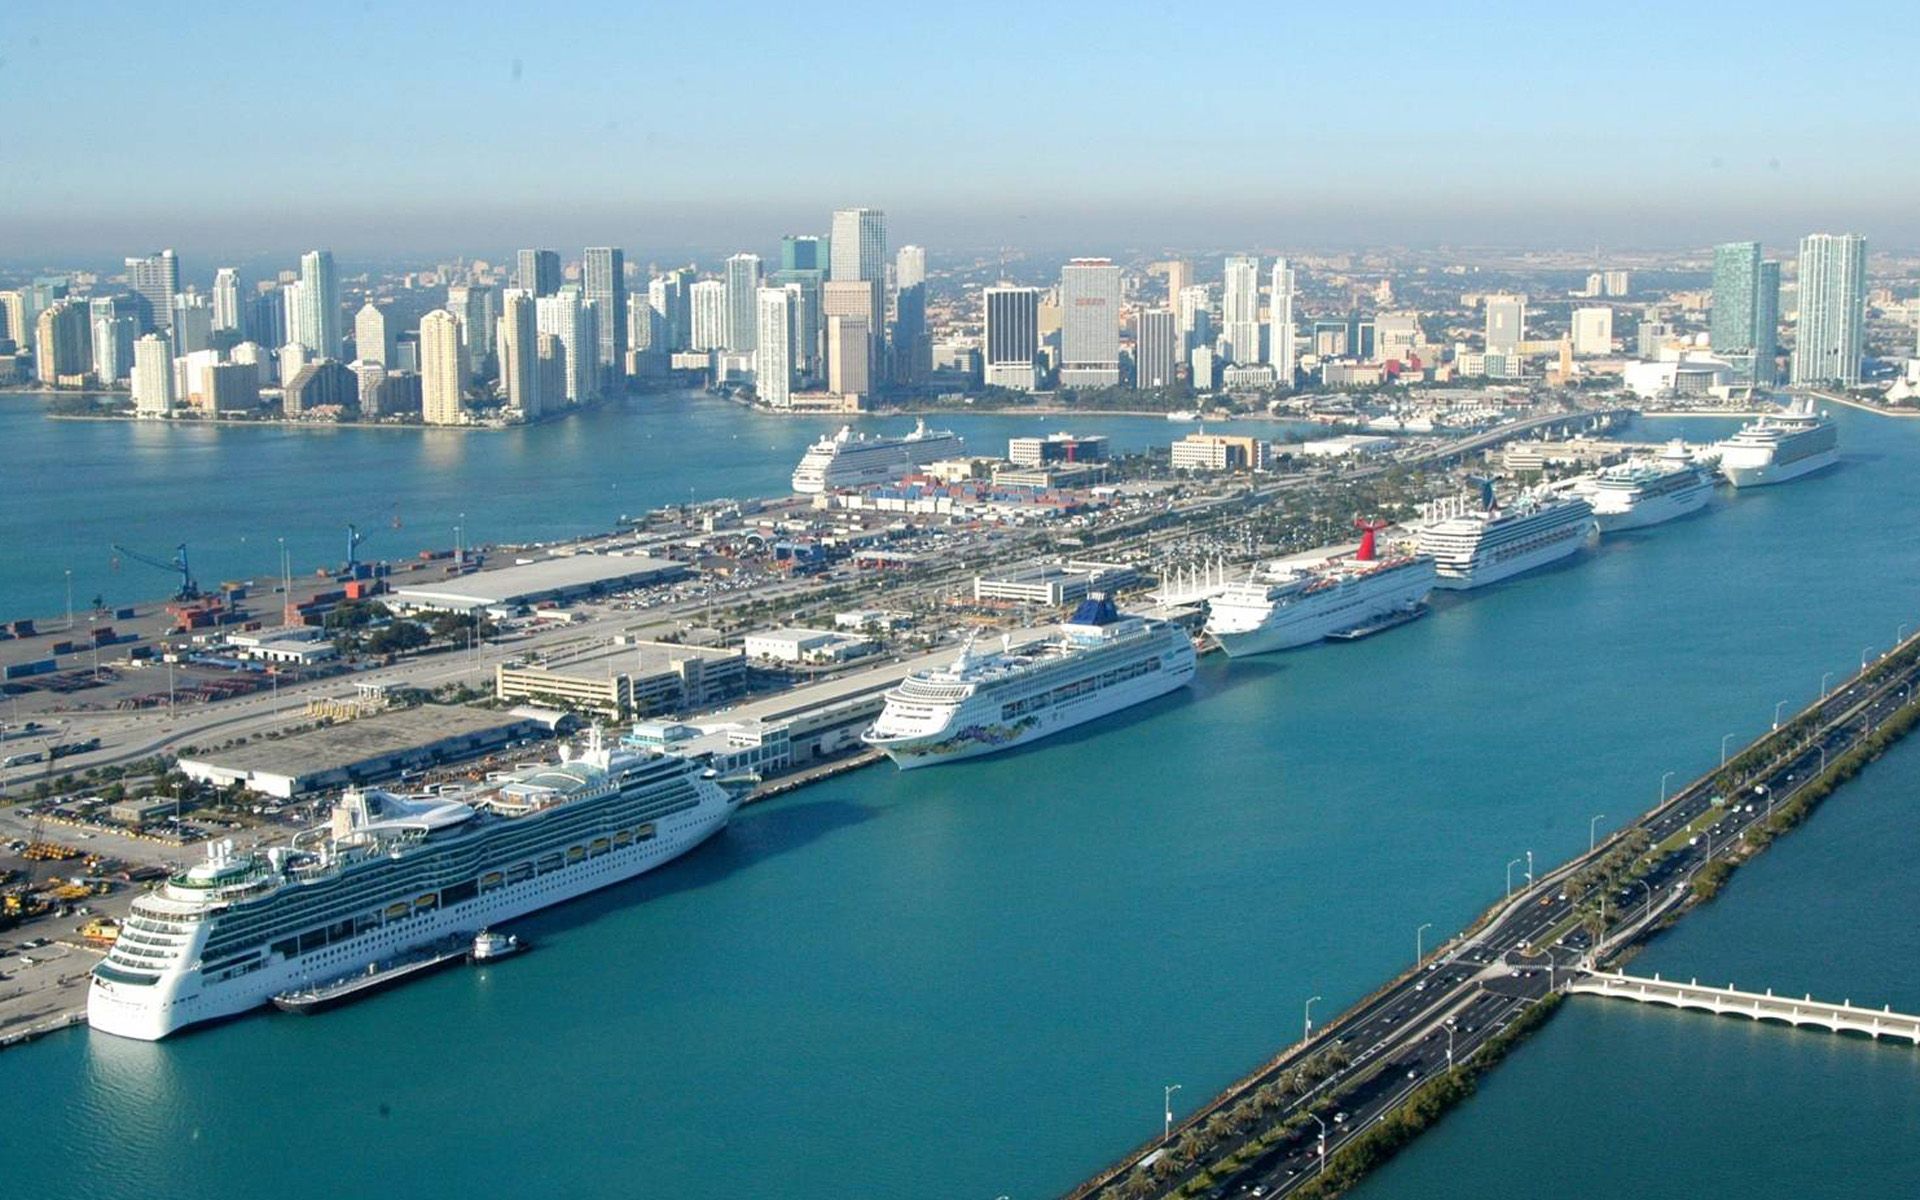 ميناء ميامي اكبر ميناء للرحلات البحرية في العالم